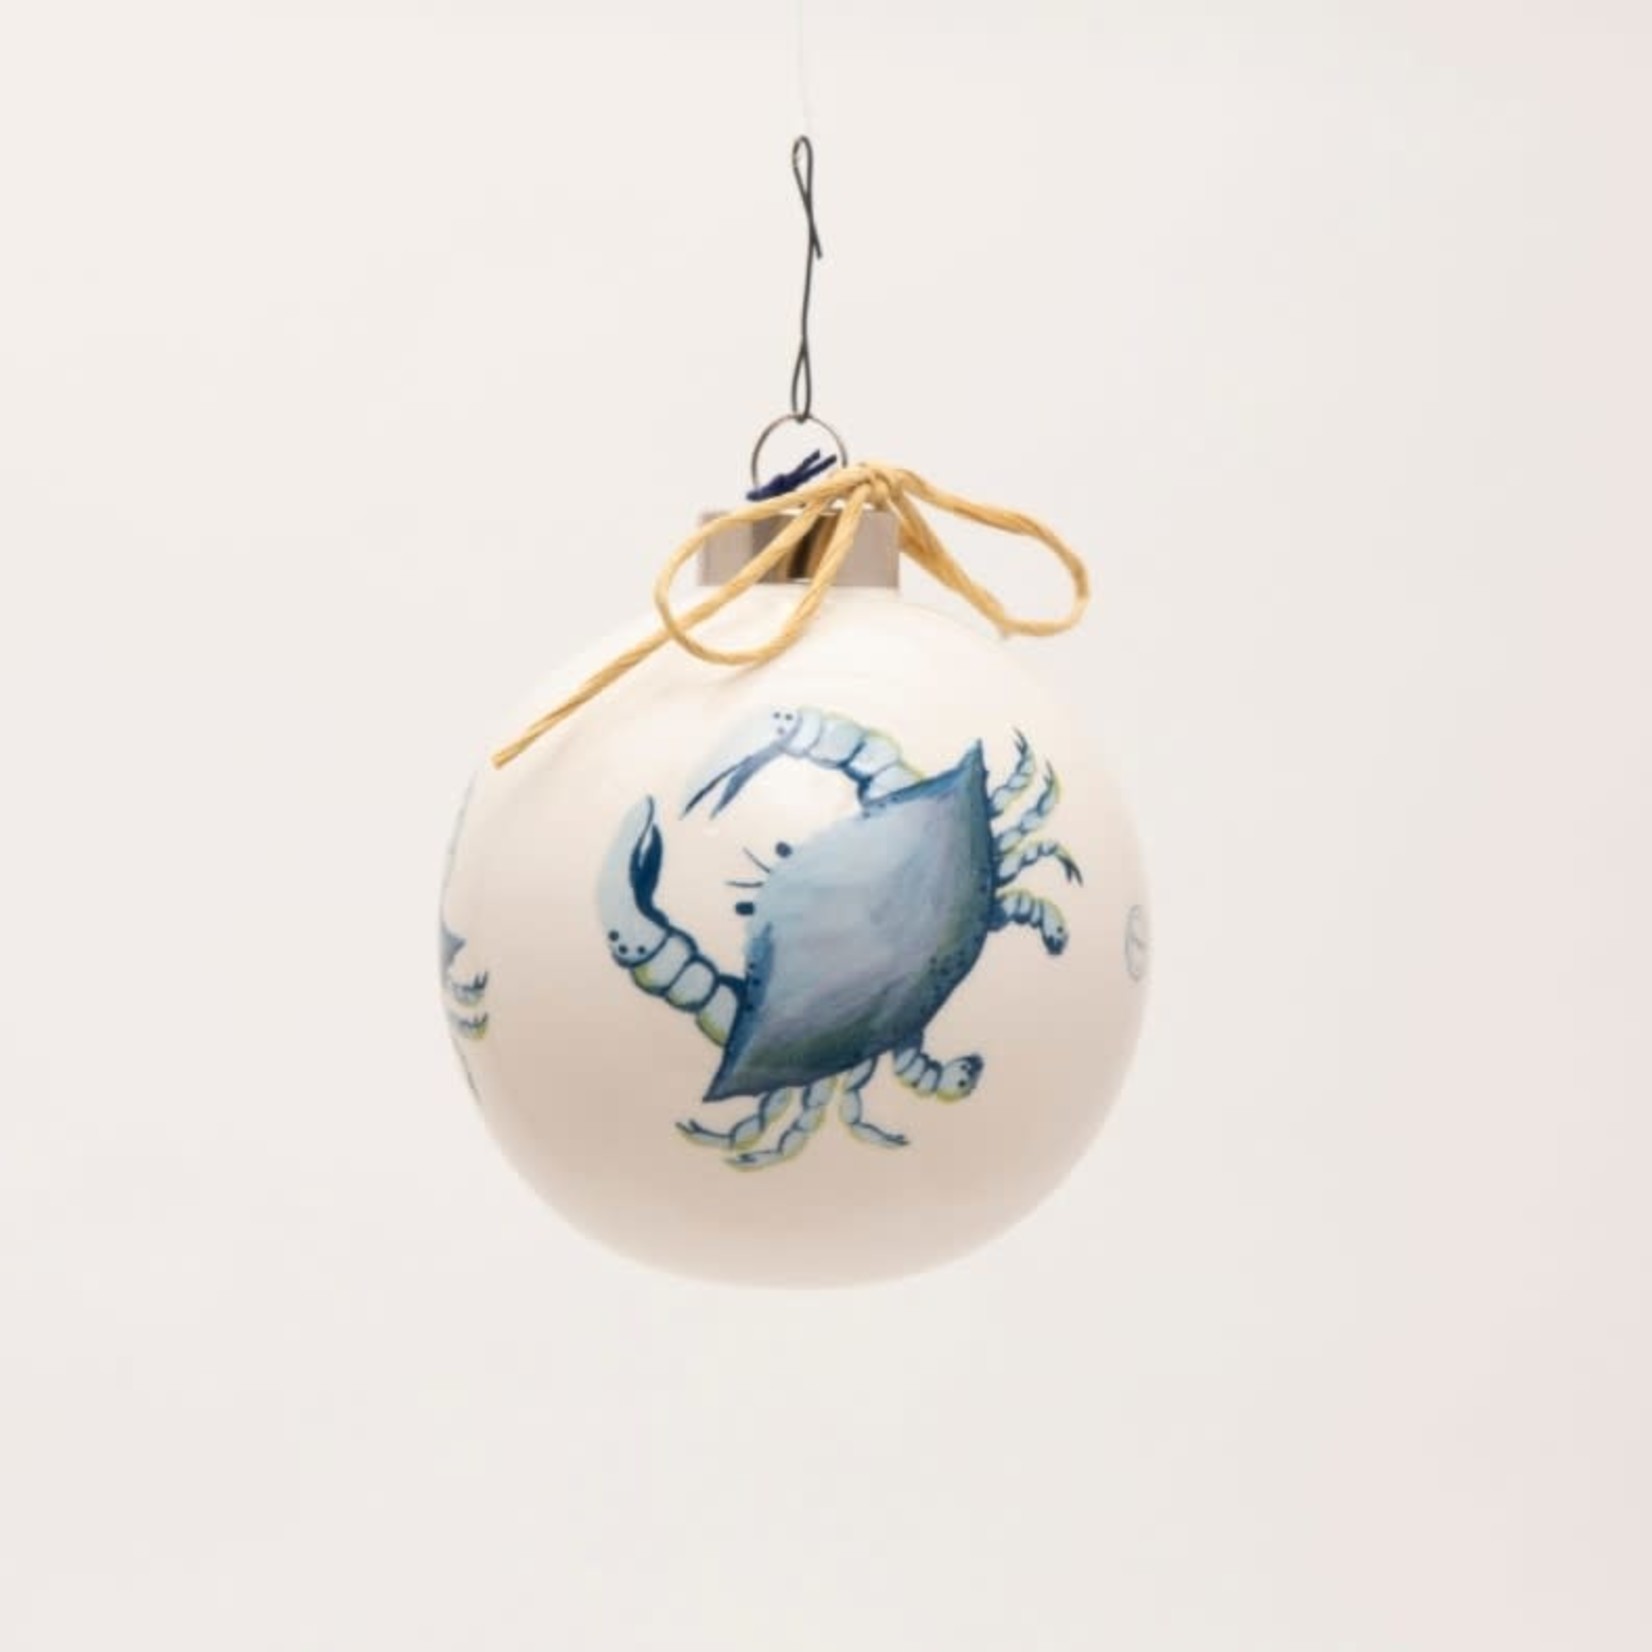 80mm Ornament - Blue Crab